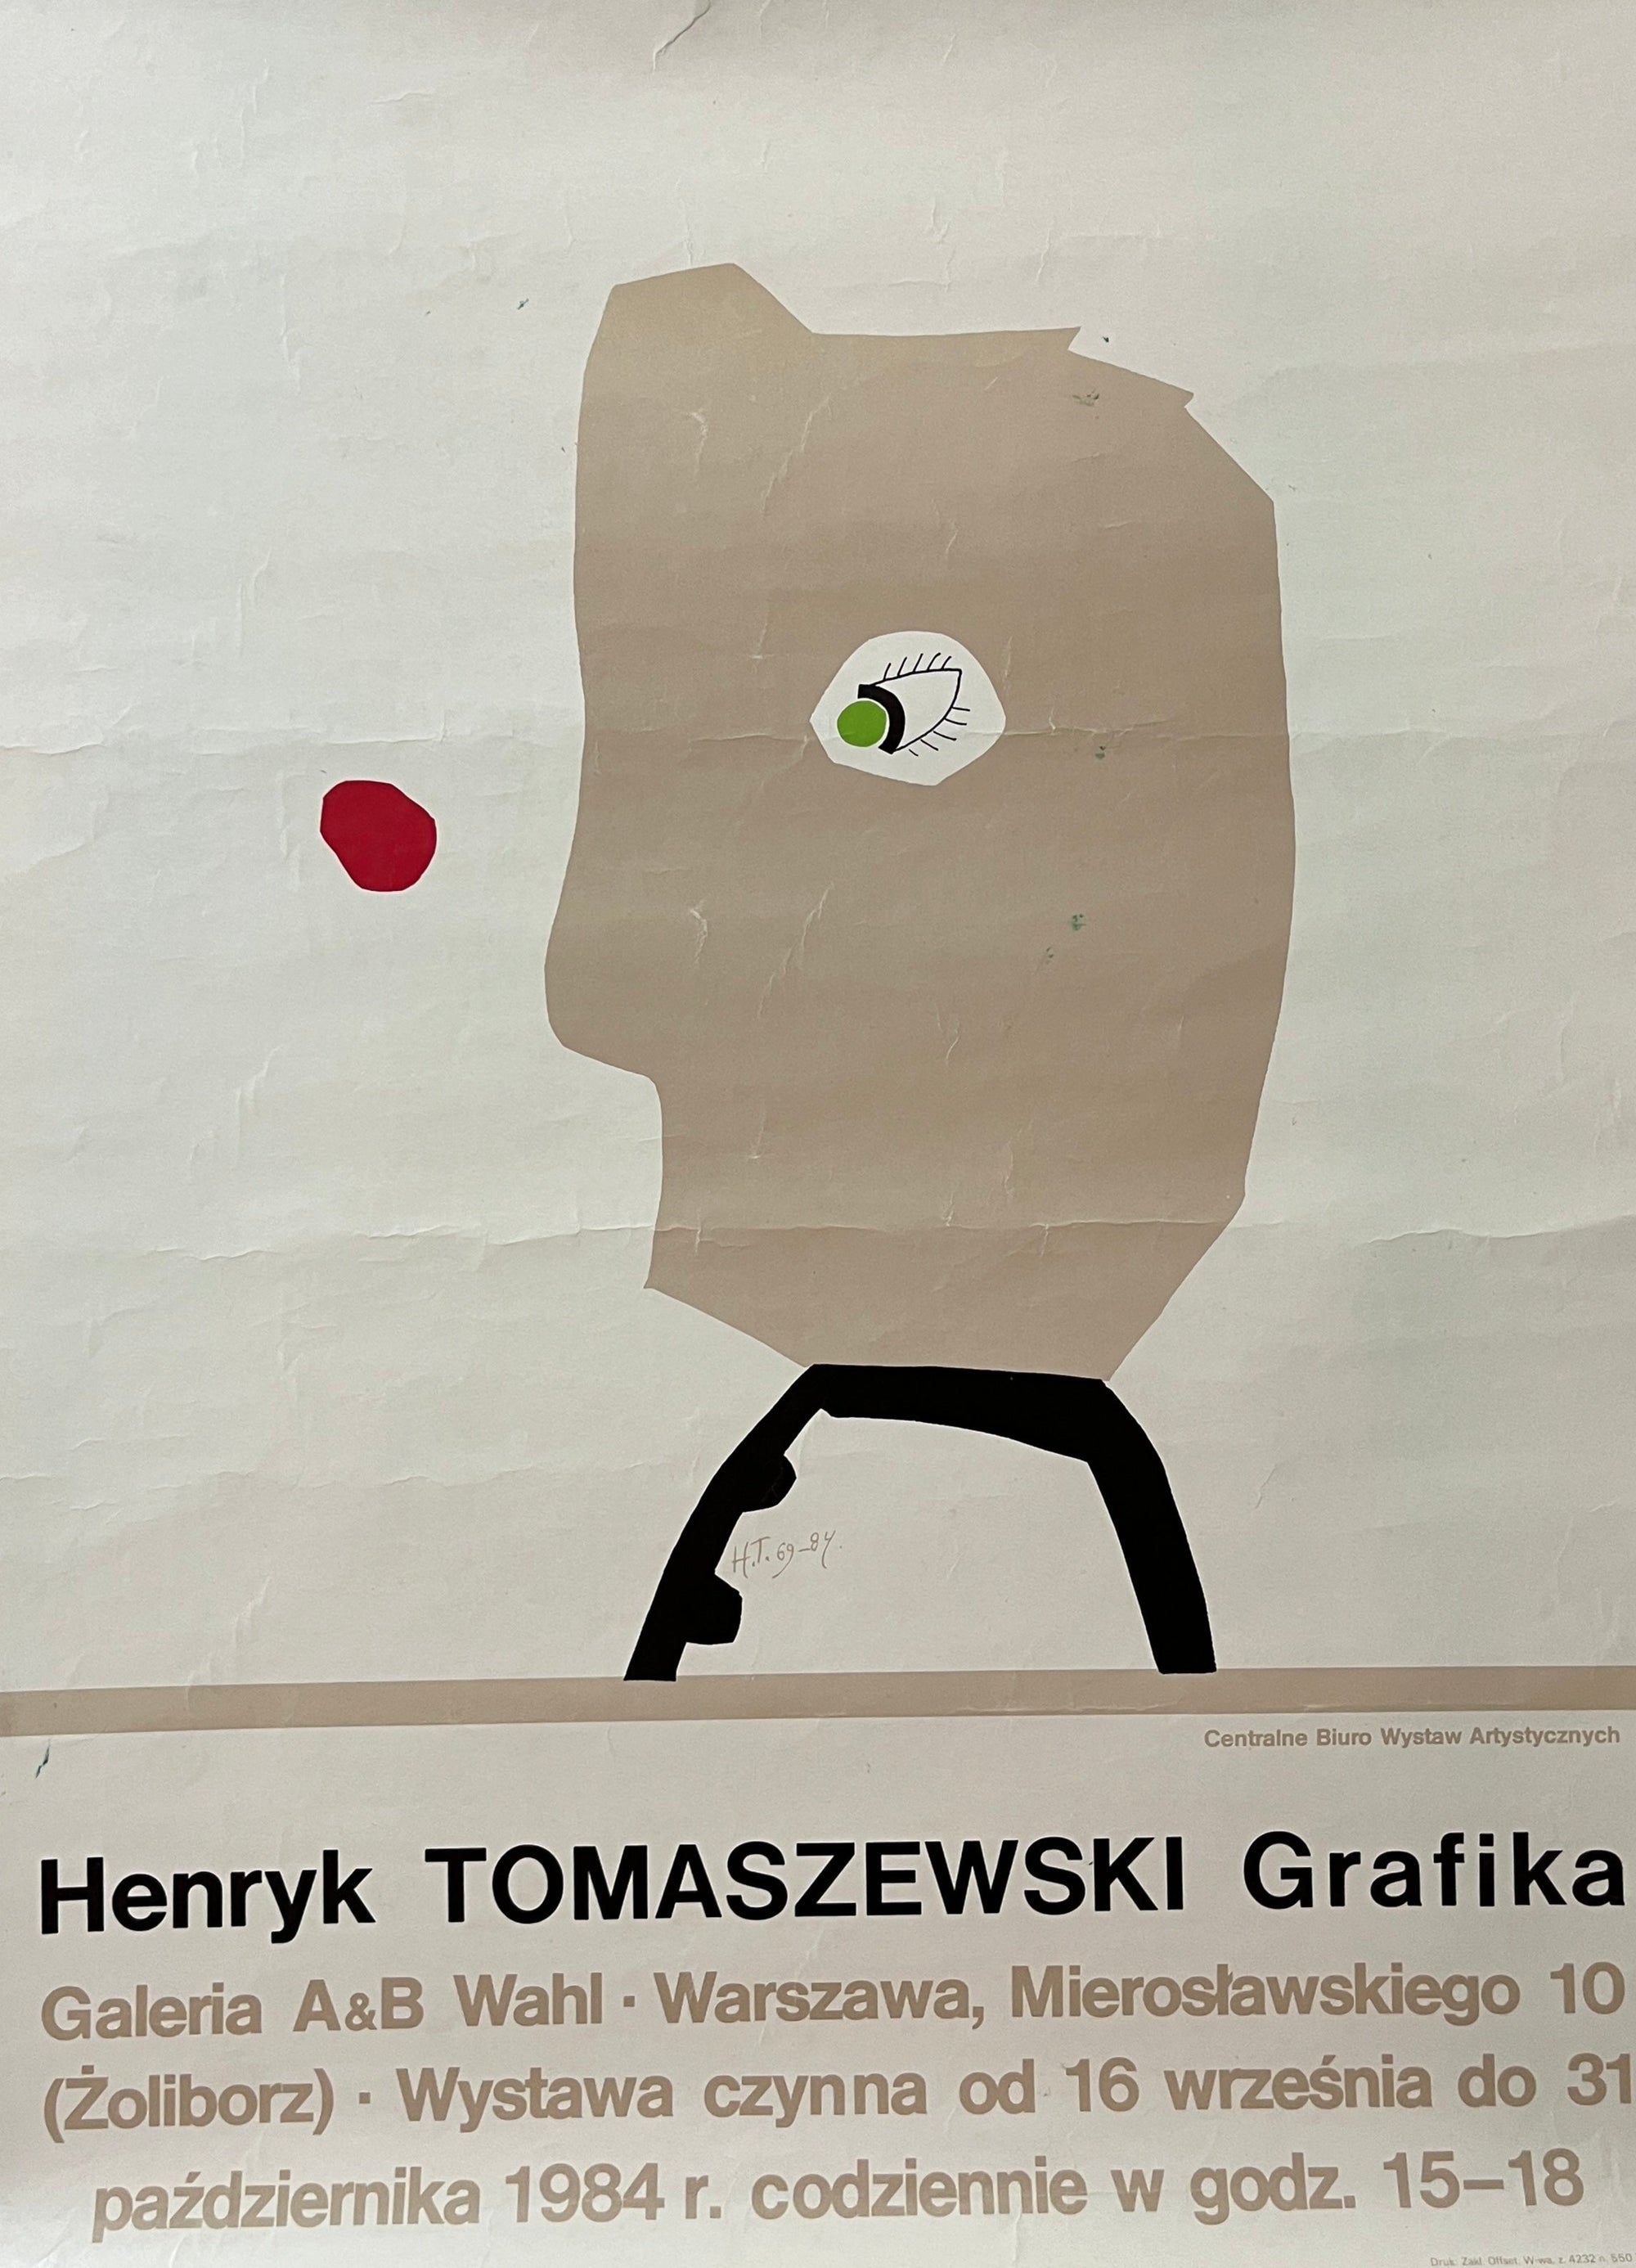 Henryk Tomaszewski Grafika by Tomaszewski